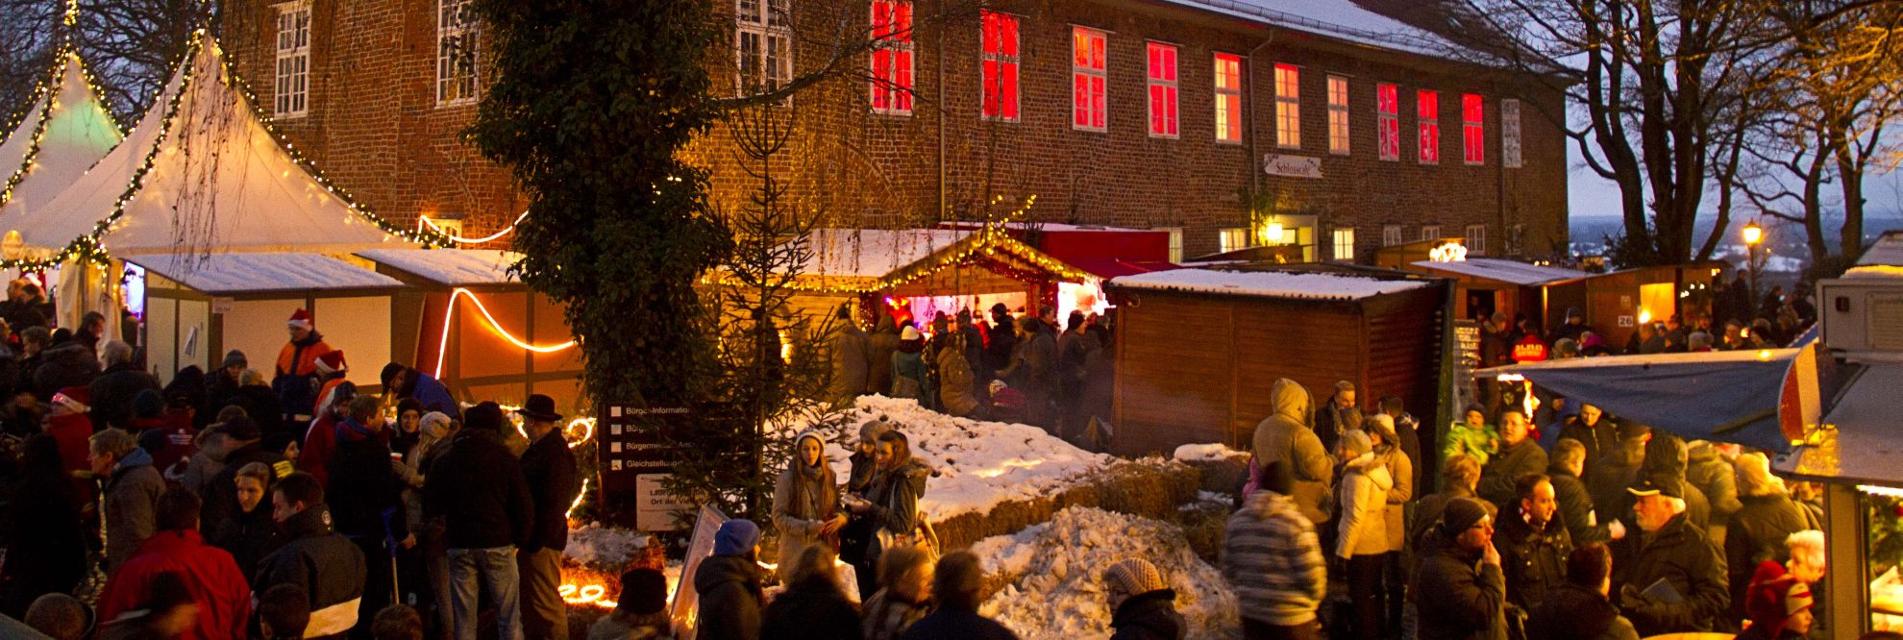 Einer der schönsten Weihnachtsmärkte im Norden vor traumhafter KulisseLauenburger Weihnachtsmarkt am Schloss Bald ist es wieder soweit, der Weihnachtsmarkt 2022 am Lauenburger Schloss öffnet seine Pforten. Einer der schönsten Weihnachtsmärkte im Norden in traumhafter Kulisse direkt auf dem beleuchteten Lauenburger Schlossplatz startet am 3. Adventswochenende. Die Besucher können klassische Weihnachtsmarkt-Leckereien mit fantastischem Ausblick auf die Elbe genießen. Vorweihnachtliche Stimmung kommt auf bei diesem gemütlichen Markt, wenn Kinderaugen leuchten und Glühweinbecher duften.        Los geht es am Freitag, 09. Dezember, um 14.00 Uhr am Schloss, die offizielle Eröffnung in der Maria-Magdalenen-Kirche in der Lauenburger Altstadt beginnt um 16.00 Uhr. Anschließend wird das Weihnachtslicht vom Altar der Kirche zur Krippe auf dem Weihnachtsmarkt getragen. Auch in diesem Jahr bieten zahlreiche Kunsthandwerker und Gastronomen ihre Waren an. Der Weihnachtsmann, seine Engel und lebende Märchenfiguren rund um Rapunzel und Frau Holle gehören wie in den letzten Jahren zum Programm.        Dazu wird es wieder ein großes Bühnenprogramm mit Aktionen, Lesungen und viel Musik geben. Auch der „Lebendige Adventskalender“ findet in diesem Jahr auf der Bühne statt! Für die Kinder wird es ein Märchenzelt am Schloss geben. Ein weiteres Highlight wird wieder der Lichterwald „Winterträume“ im Park am Stadtentwicklungsamt sein. Ein übergroßer beleuchteter Mond zeigt den Besuchern den Weg zum illuminierten Lichterwald-Eingang.      Programm:        Lauenburger Weihnachtsmarkt-Programm 09.12.16.00 Uhr: Weihnachtsmarkt-Eröffnung in der Maria-Magdalenen-Kirche mit dem Shantychor „Die Kielschweine“, dem Kinderchor der ev. Kita „Elbnest“, Bürgervorsteher Wilhelm Bischoff und Pastor Ulrich Billet18.00 Uhr: Lebendiger Adventskalender mit Pastor Ulrich Billet19.00 Uhr: Rock’n’Roll-Christmas mit „MIKEL ONETWO“ Lauenburger Weihnachtsmarkt-Programm 10.12.14.30 Uhr: Plattdeutsche Wiehnacht mit Rüdiger Ulrich16.00 Uhr: Der Weihnachtsmann liest im Märchenzelt16.30 Uhr: Weihnachtsliedersingen mit Pastor Ulrich Billet und Katja Gerkensmeyer-Billet17.30 Uhr: Frau Holle lässt es vom Schlossturm schneien18.00 Uhr: Lebendiger Adventskalender mit Pastor Ulrich Billet19.00 Uhr: Glühwein-Party mit der Coverband „MAMALOO“ Lauenburger Weihnachtsmarkt-Programm 11.12.14.00 Uhr: Weihnachtliches mit den Musiküssen16.00 Uhr: Der Weihnachtsmann liest im Märchenzelt17.30 Uhr: Frau Holle lässt es vom Schlossturm schneien18.00 Uhr: Lebendiger Adventskalender mit Pastor Billet und dem Posaunenchor der ev. Kirchengemeinde                                          Geöffnet hat der Weihnachtsmarkt am 09.12. ab 14.00 Uhr, sowie am 10. und 11.12., samstags von 14 bis 22 Uhr und sonntags von 12 Uhr bis 19 Uhr, es gelten die aktuellen Corona-Regeln. Der Lauenburger Weihnachtsmarkt am Schloss – immer eine Reise wert!  